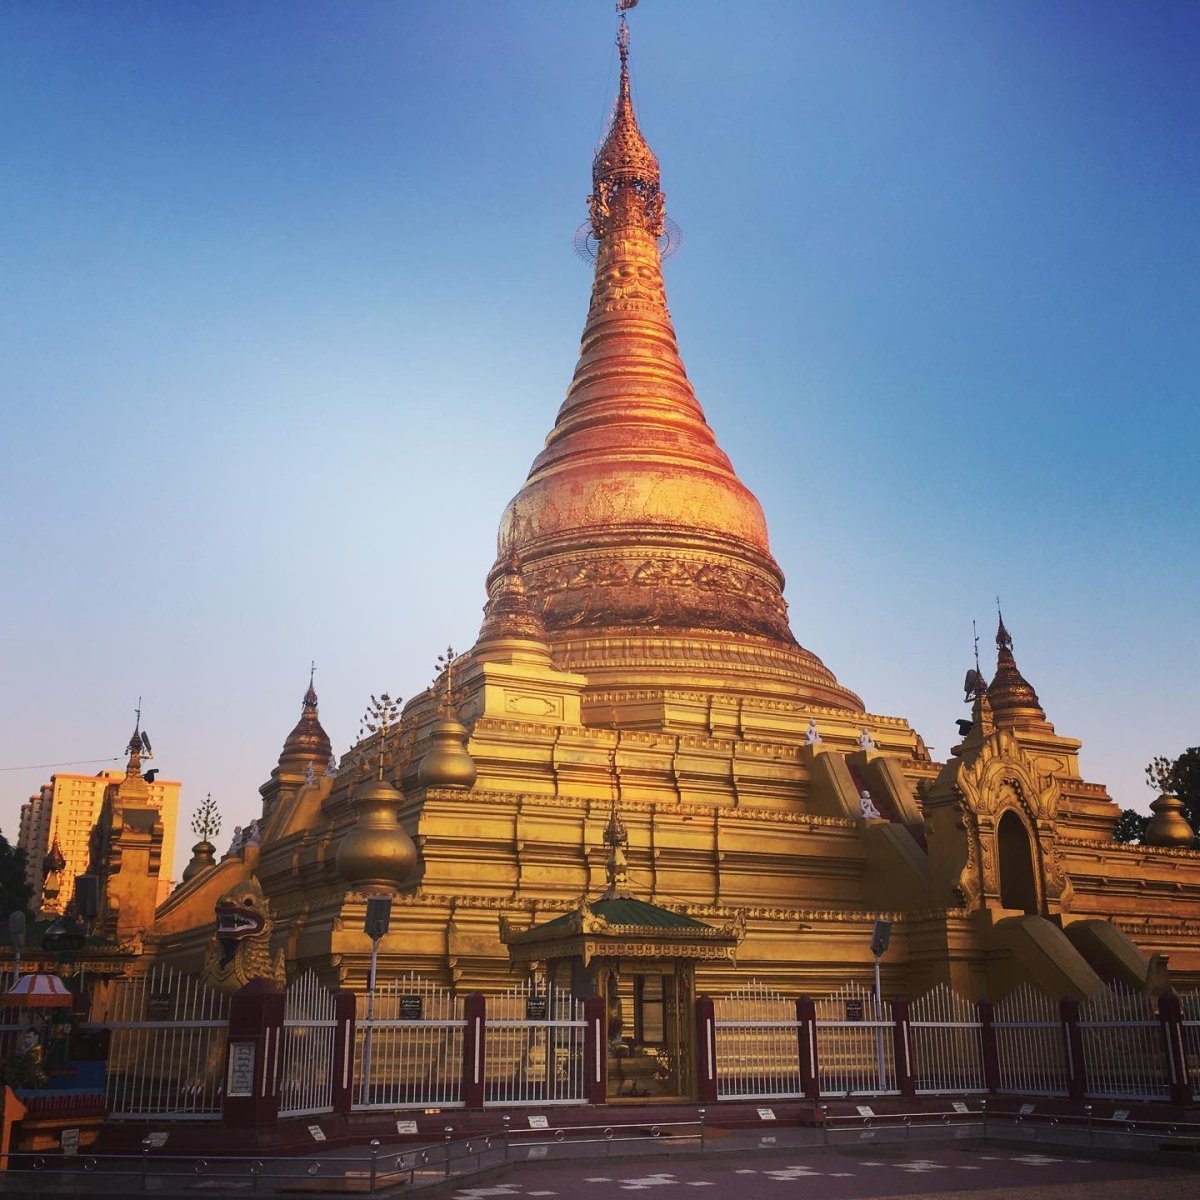 Mandalay - Ein Daw Yar Pagoda